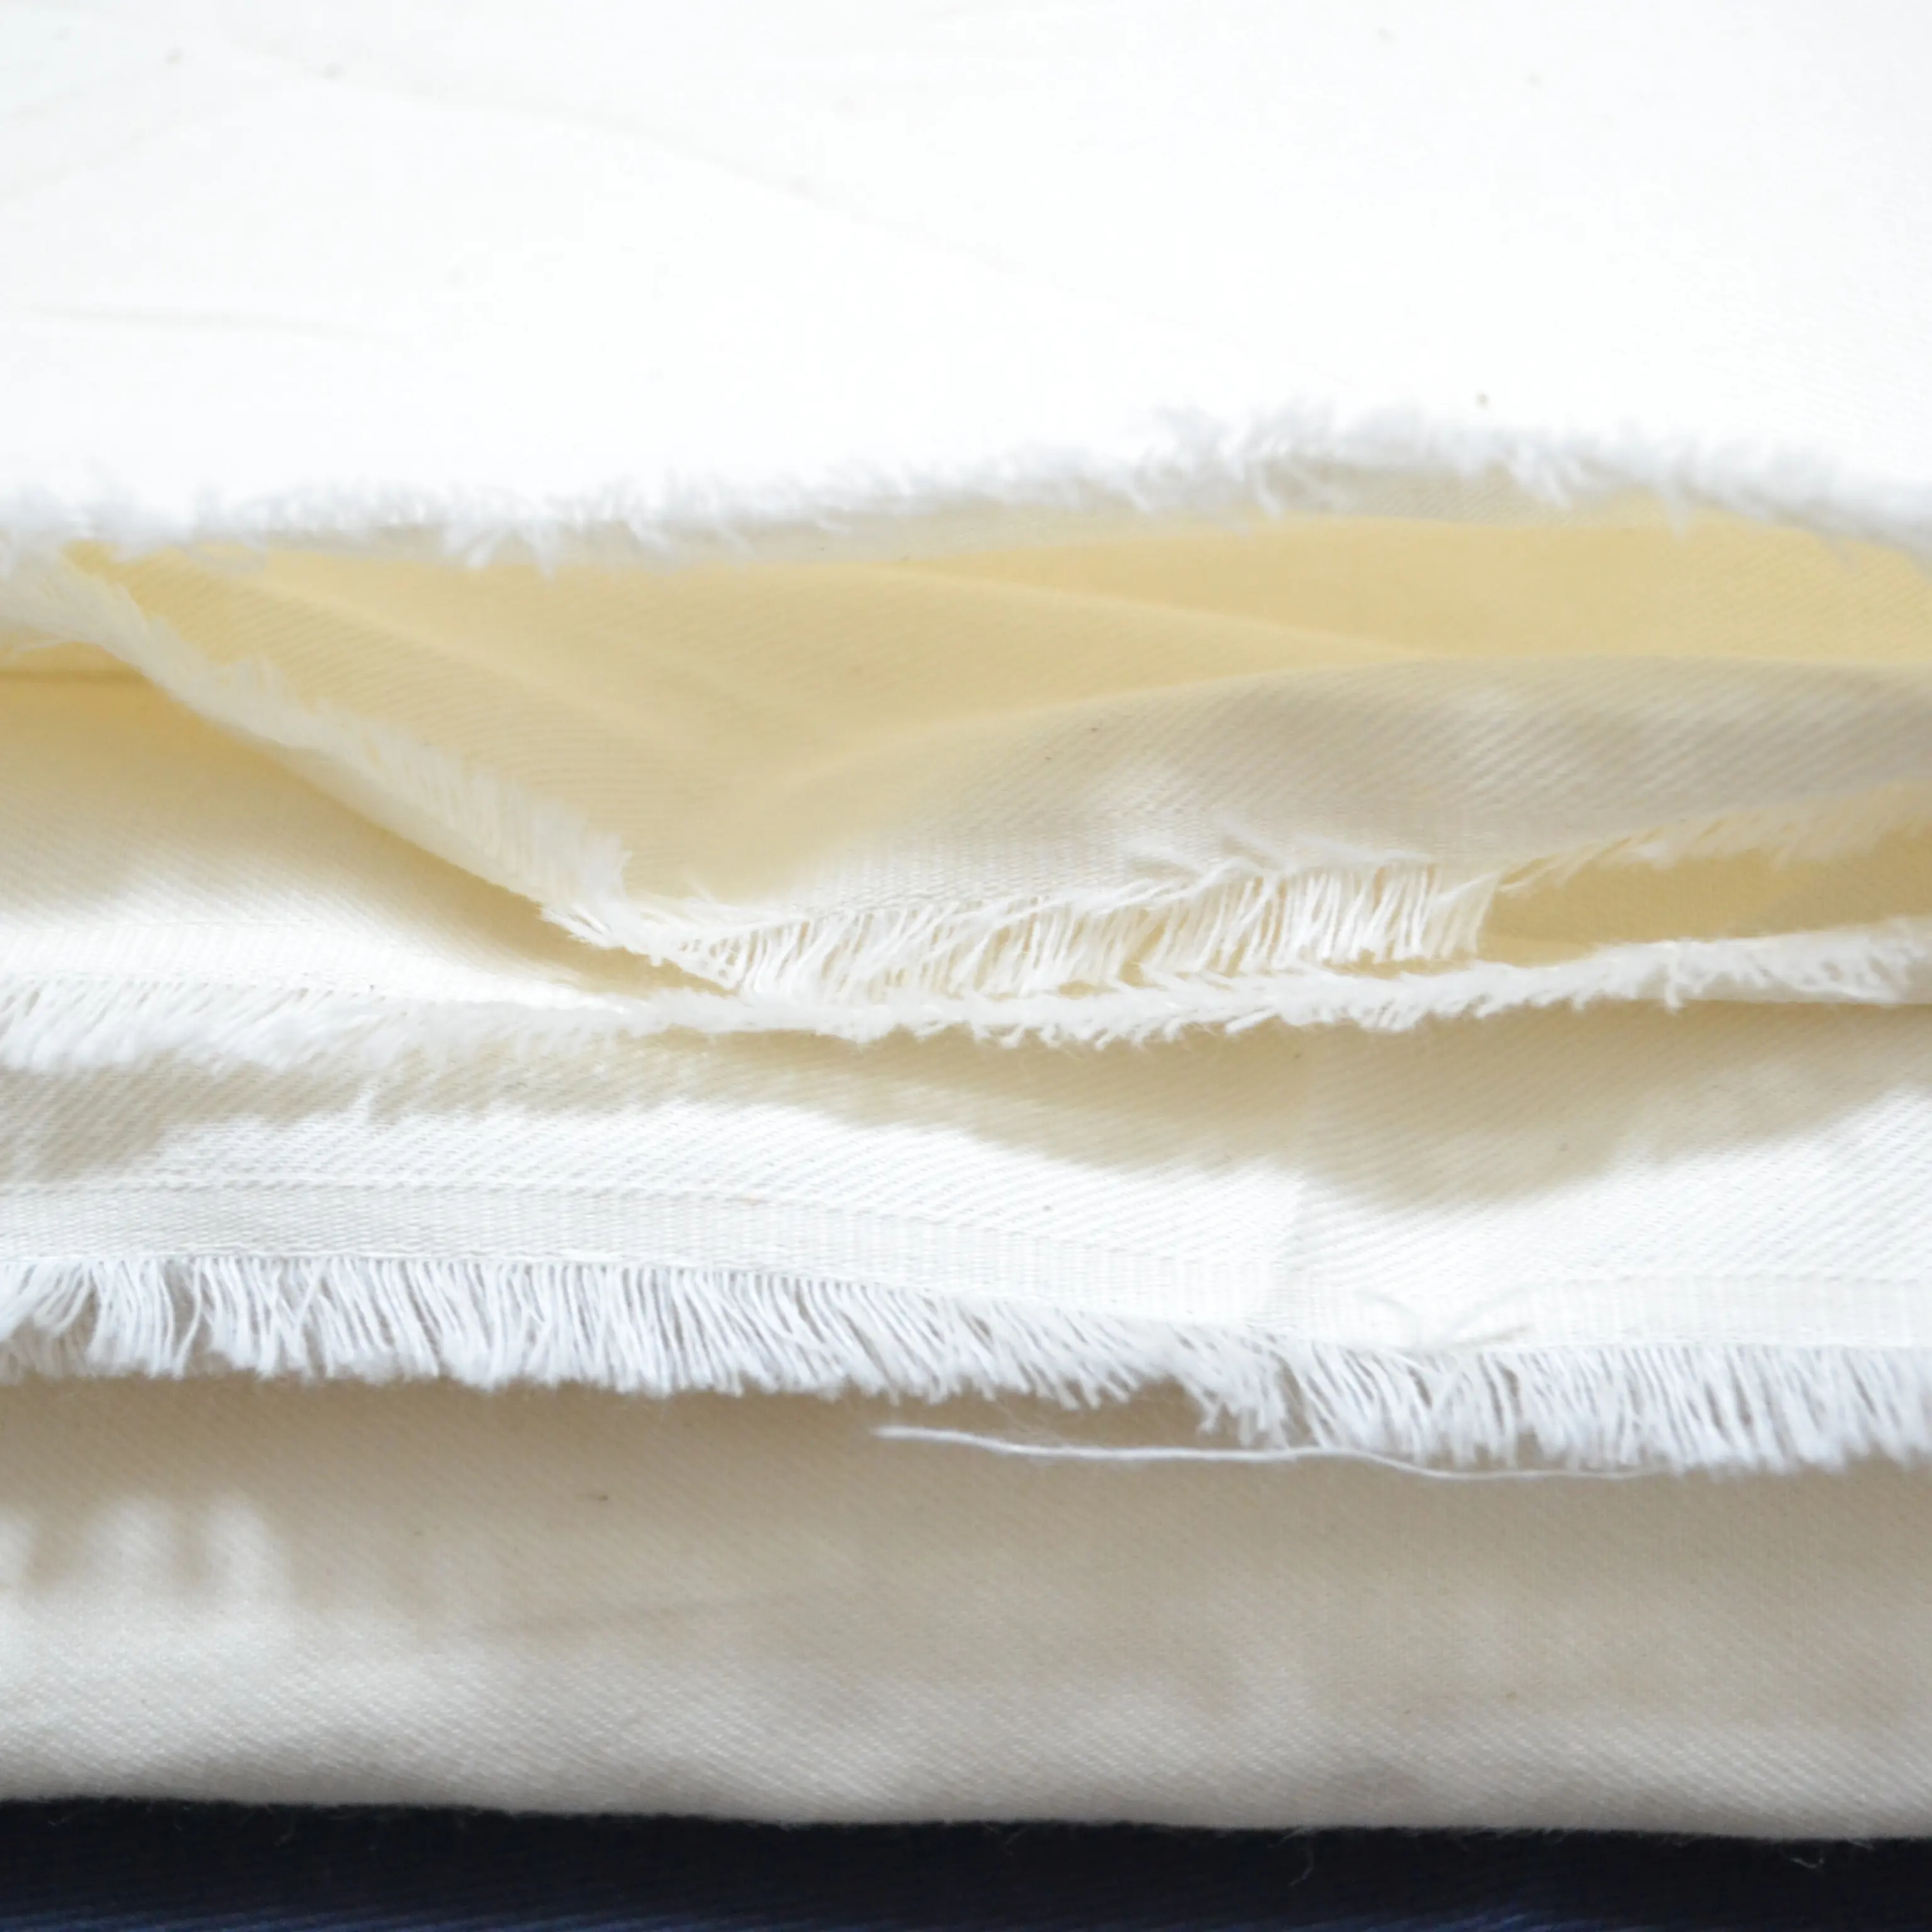 Tessuto Greige fodera tascabile in poliestere/cotone tessuto greige non sbiancato